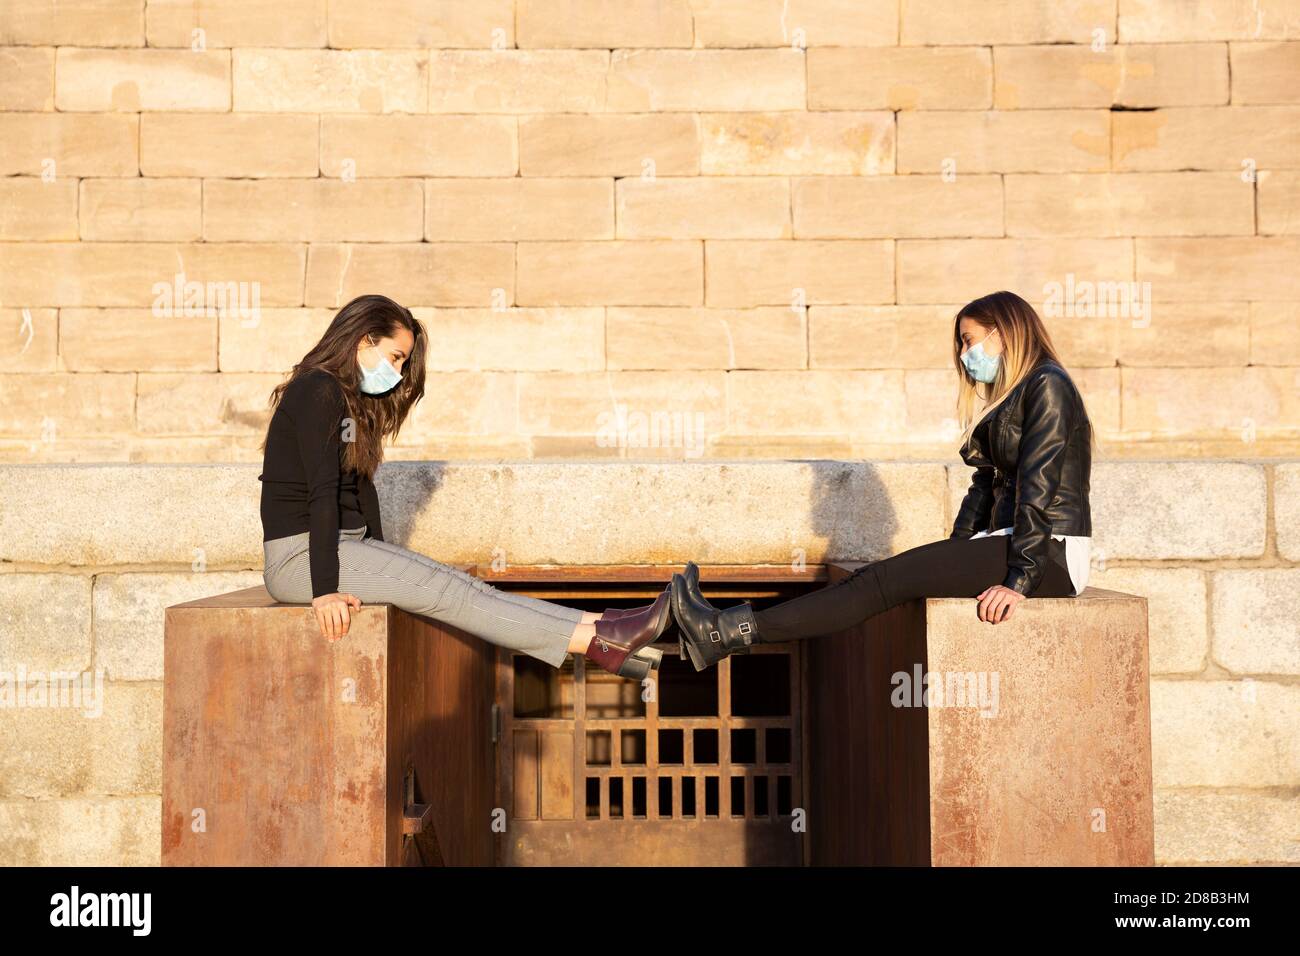 Zwei Mädchen mit einer Gesichtsmaske halten soziale Distanz durch die Verlängerung ihrer Beine. Sie sind im Freien. Stockfoto